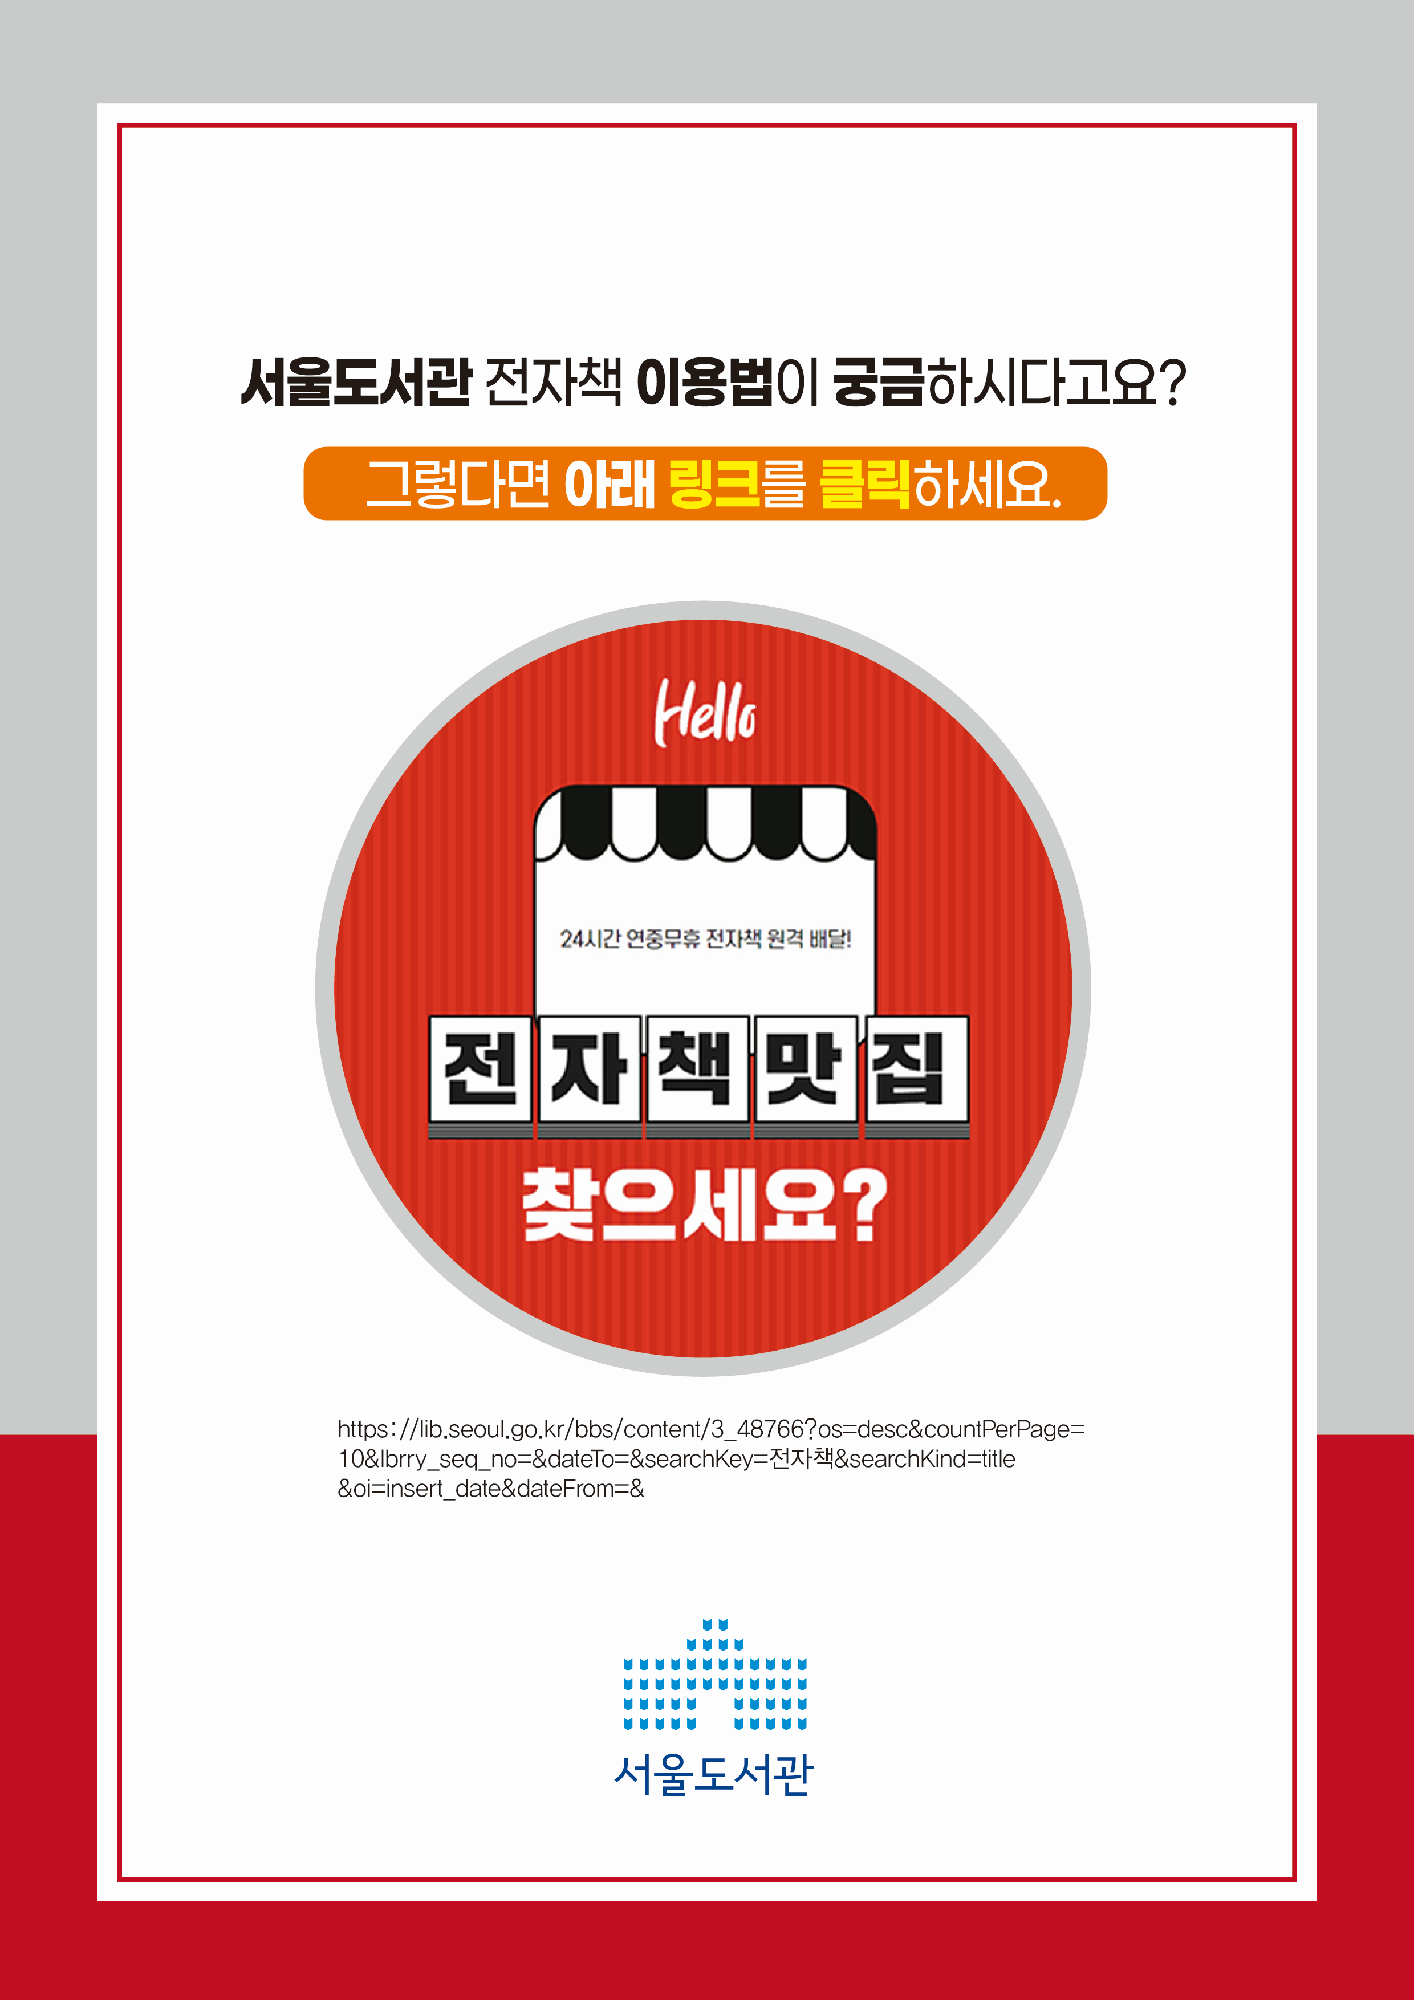 서울도서관 전자책 이용법이 궁금하시다고요?  그렇다면 링크를 클릭하세요.